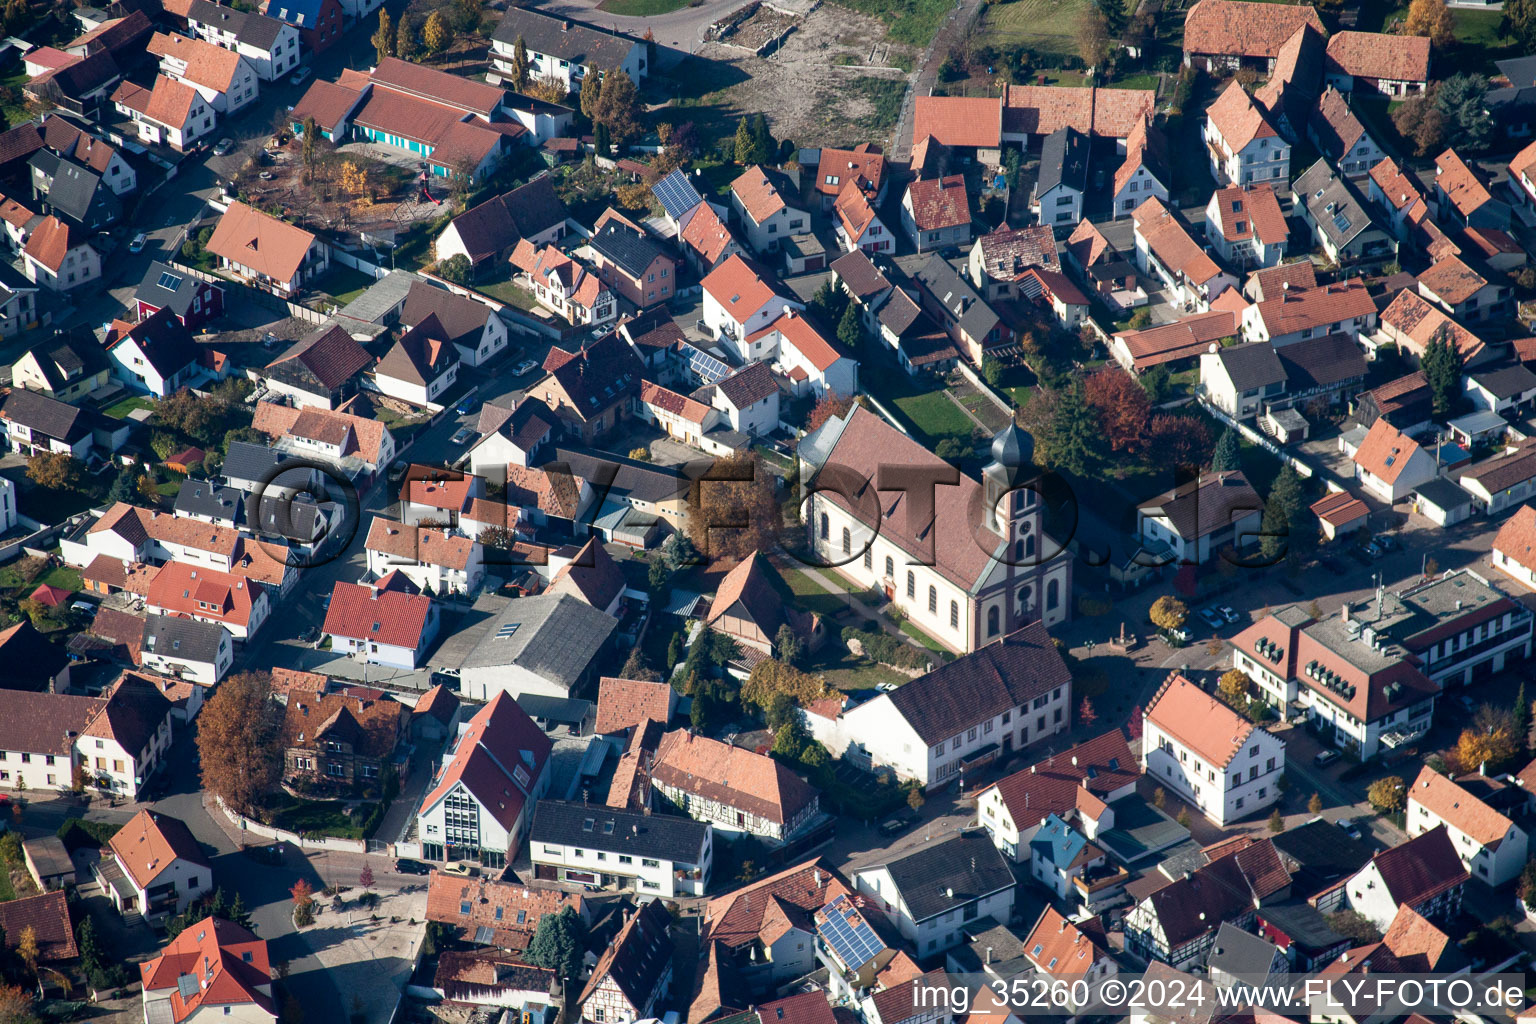 Photographie aérienne de Bâtiment d'église au centre du village à Hagenbach dans le département Rhénanie-Palatinat, Allemagne